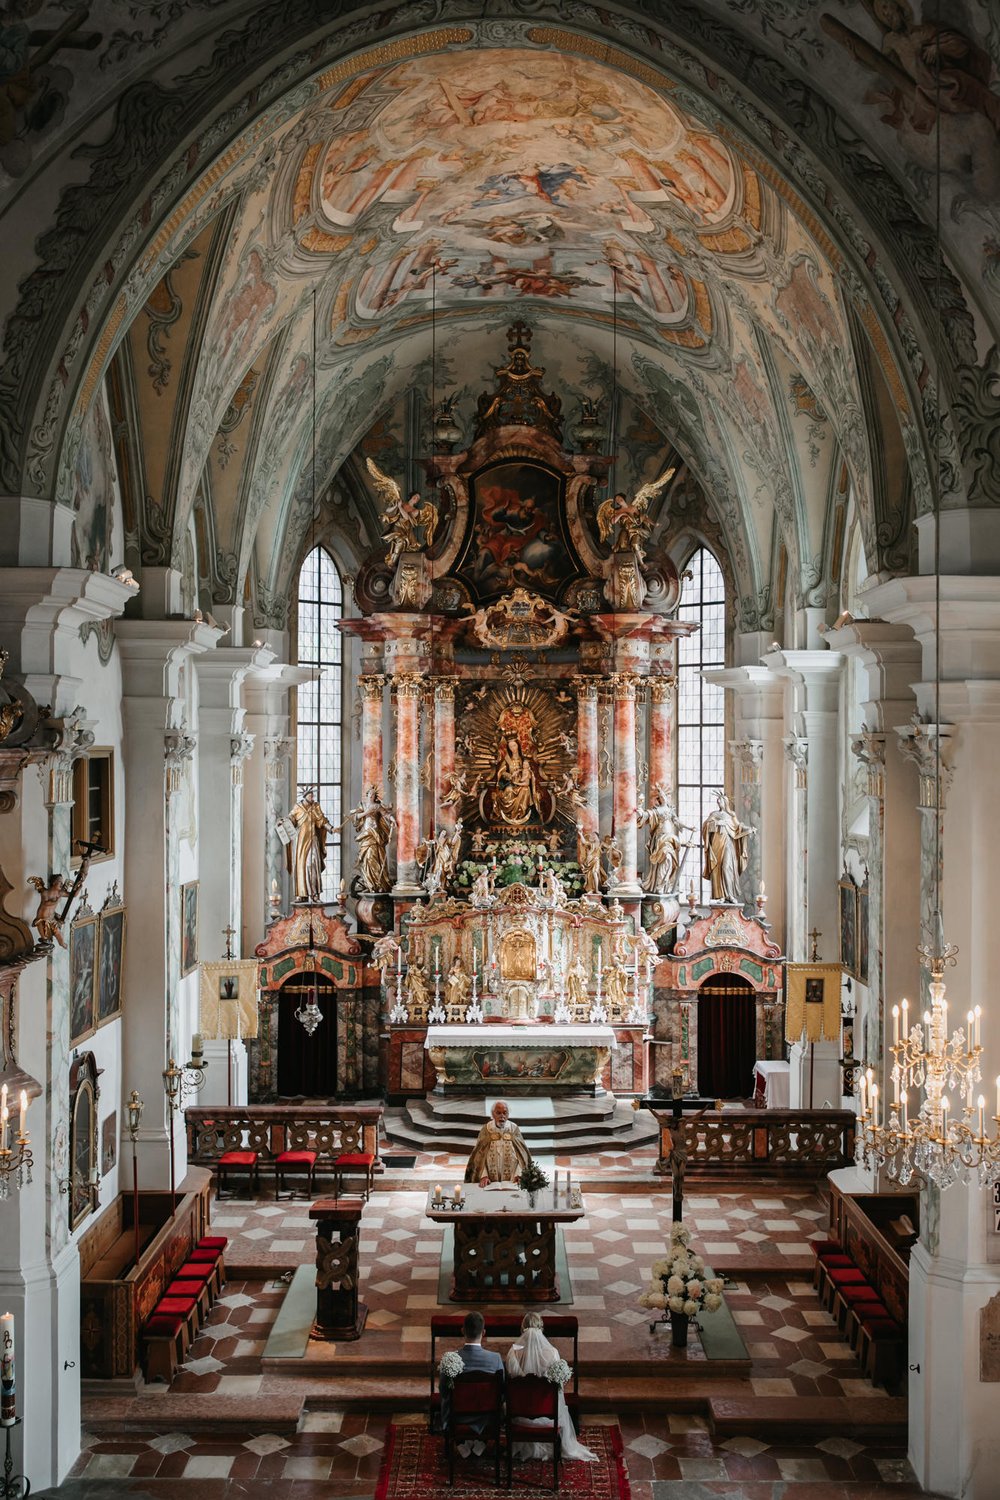 Hochzeit Leogang Salzburg Bergdorf Priesteregg